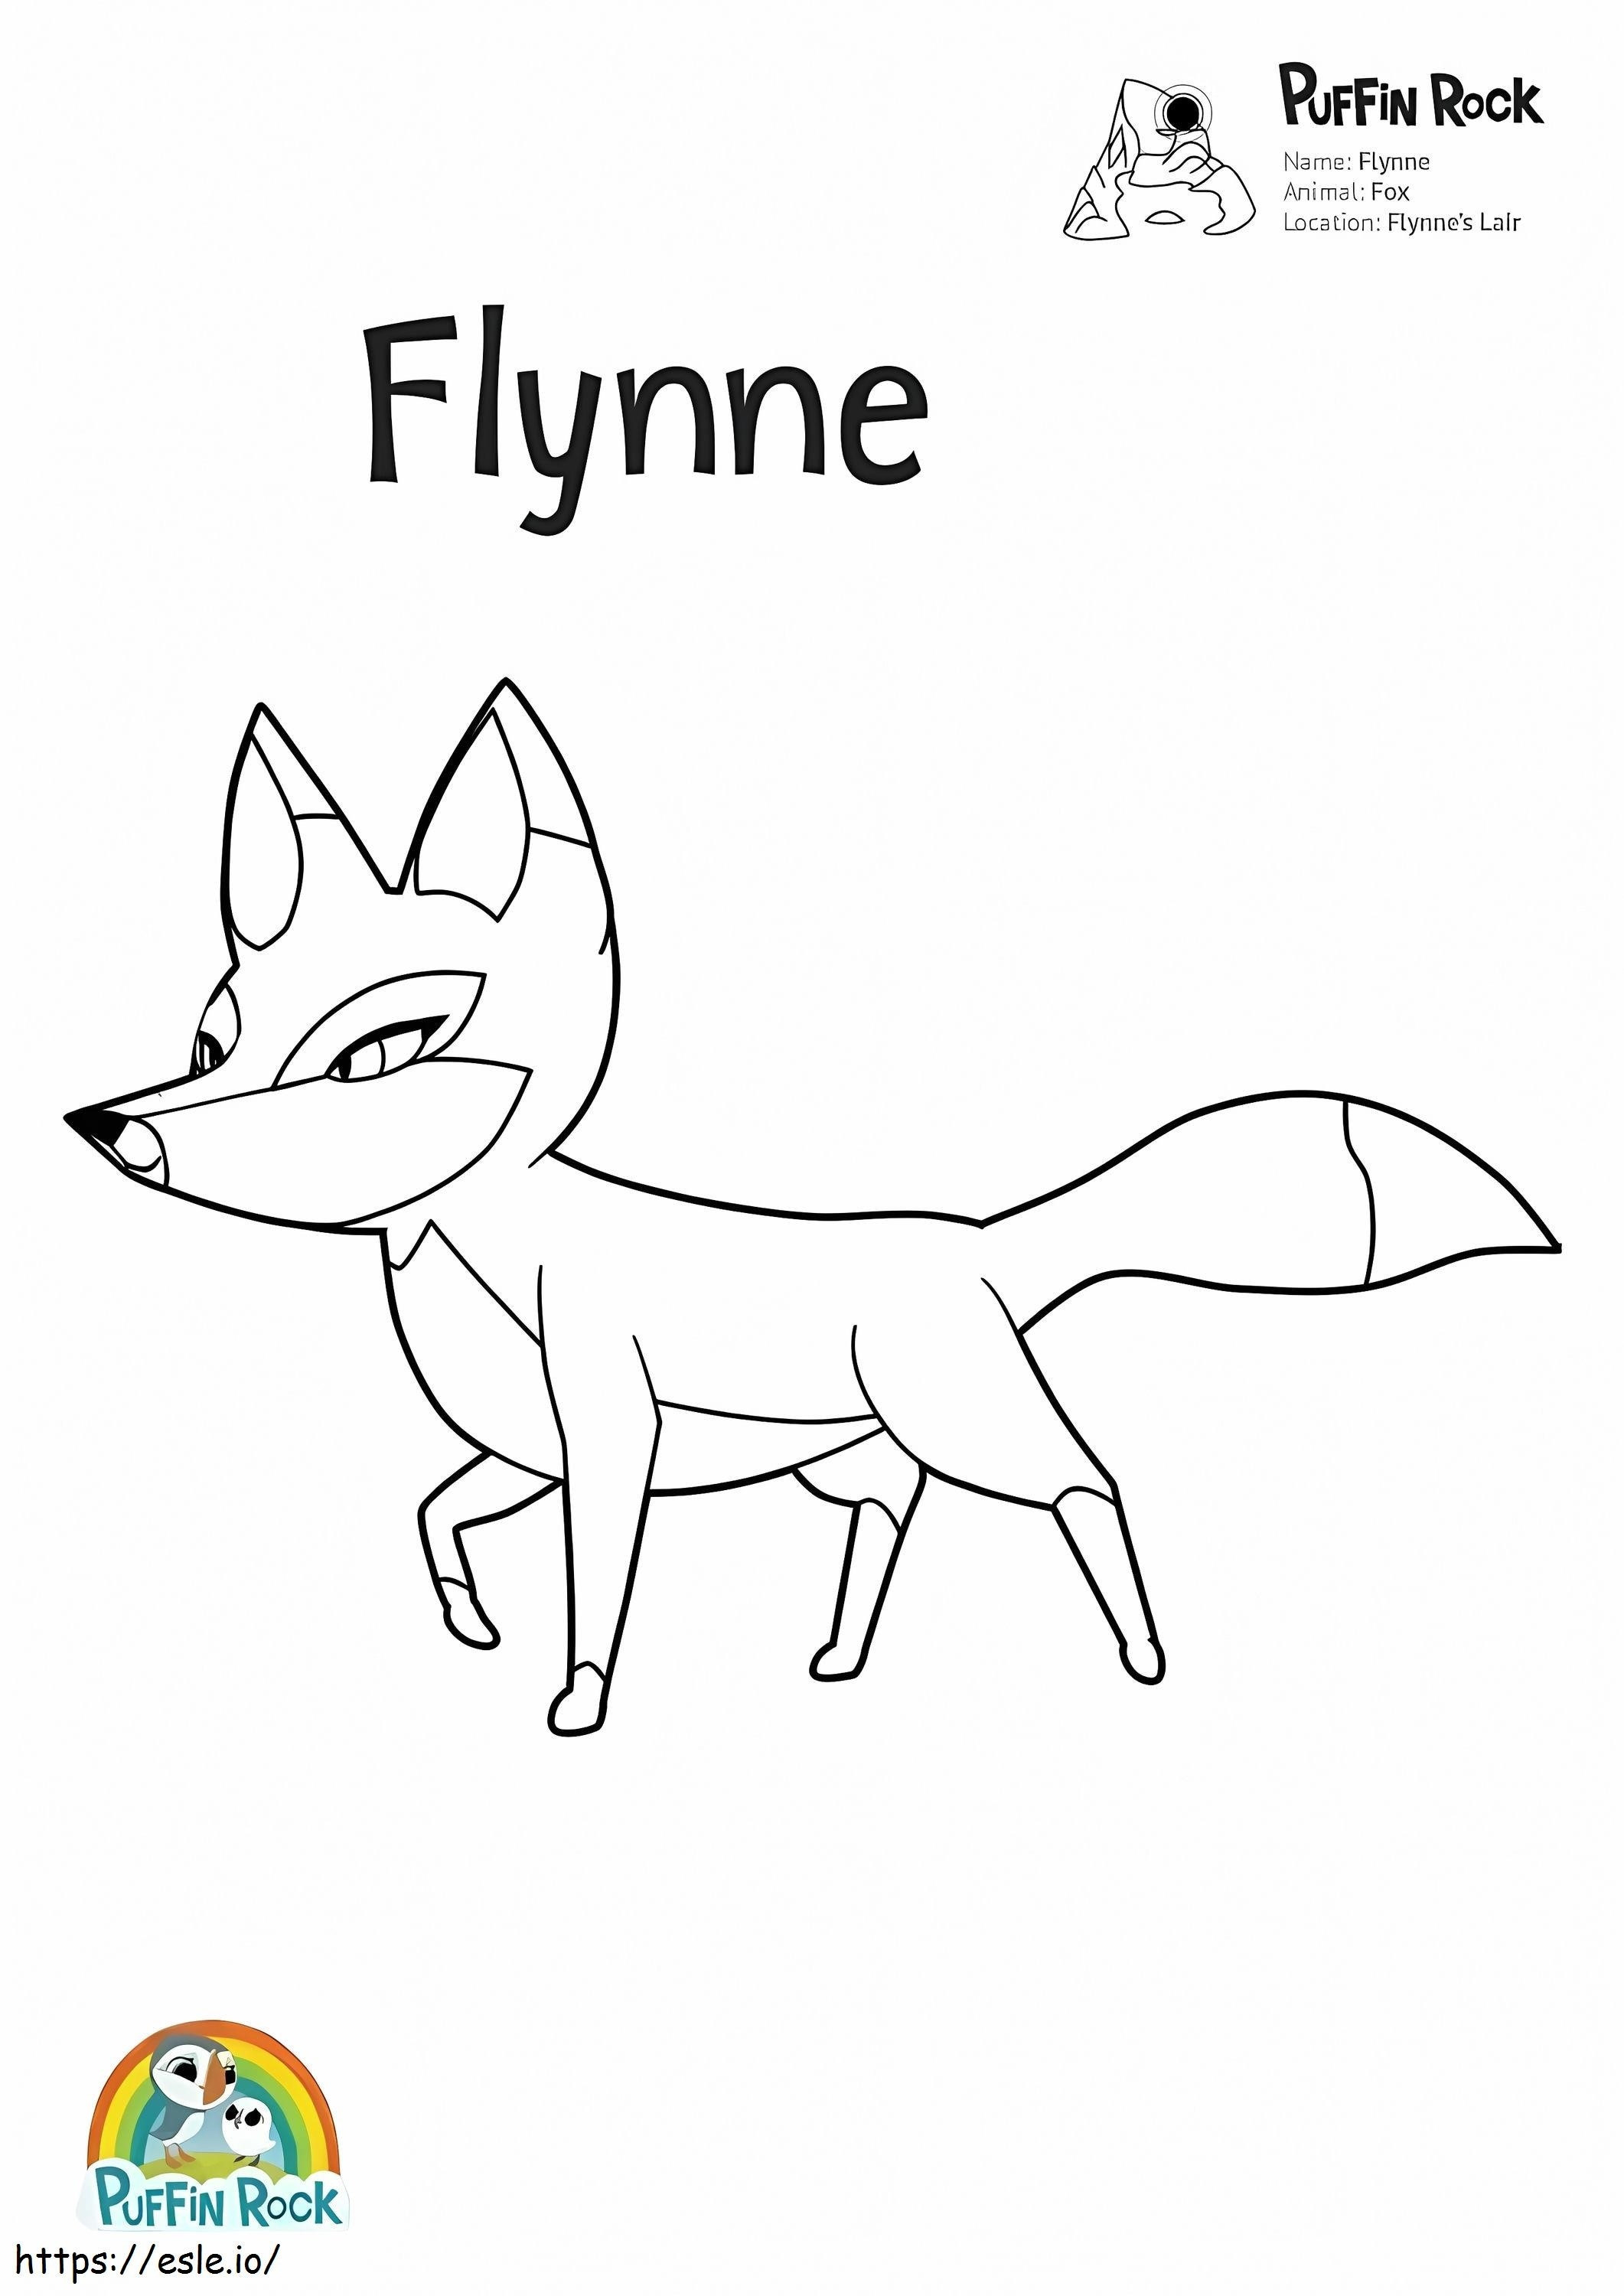  Puffin Rock Flynne 001. oldal kifestő